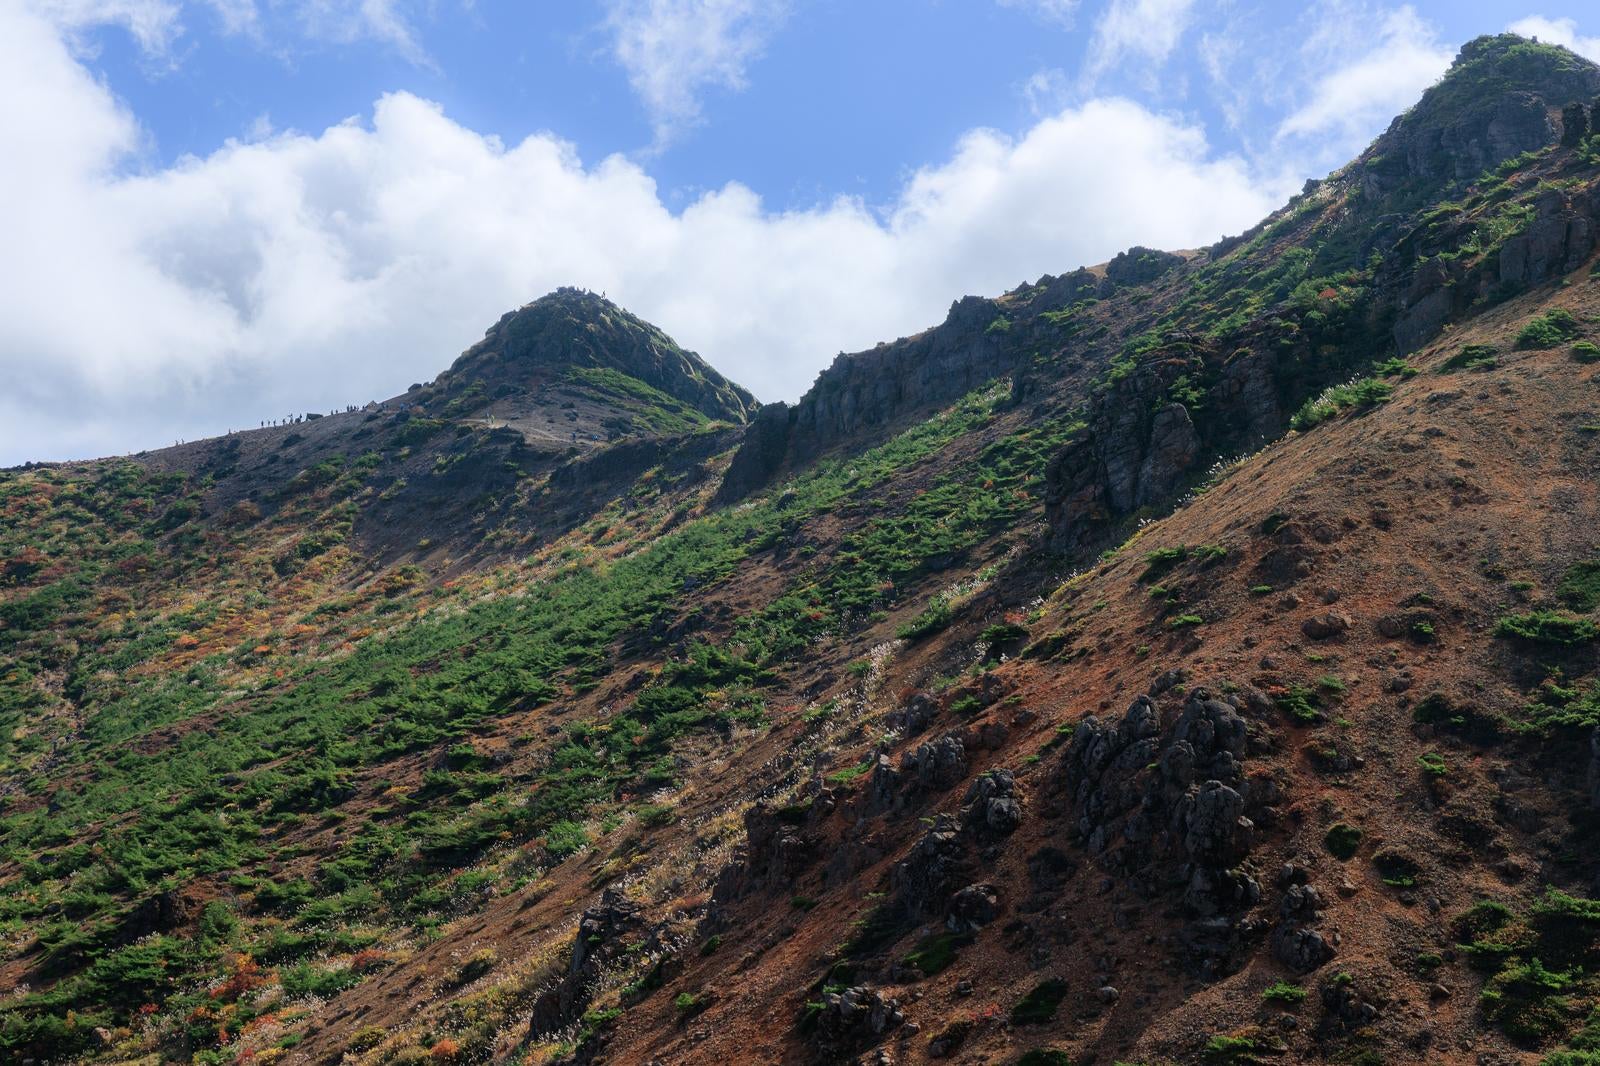 「安達太良山の山肌に見る自然の力と美」の写真